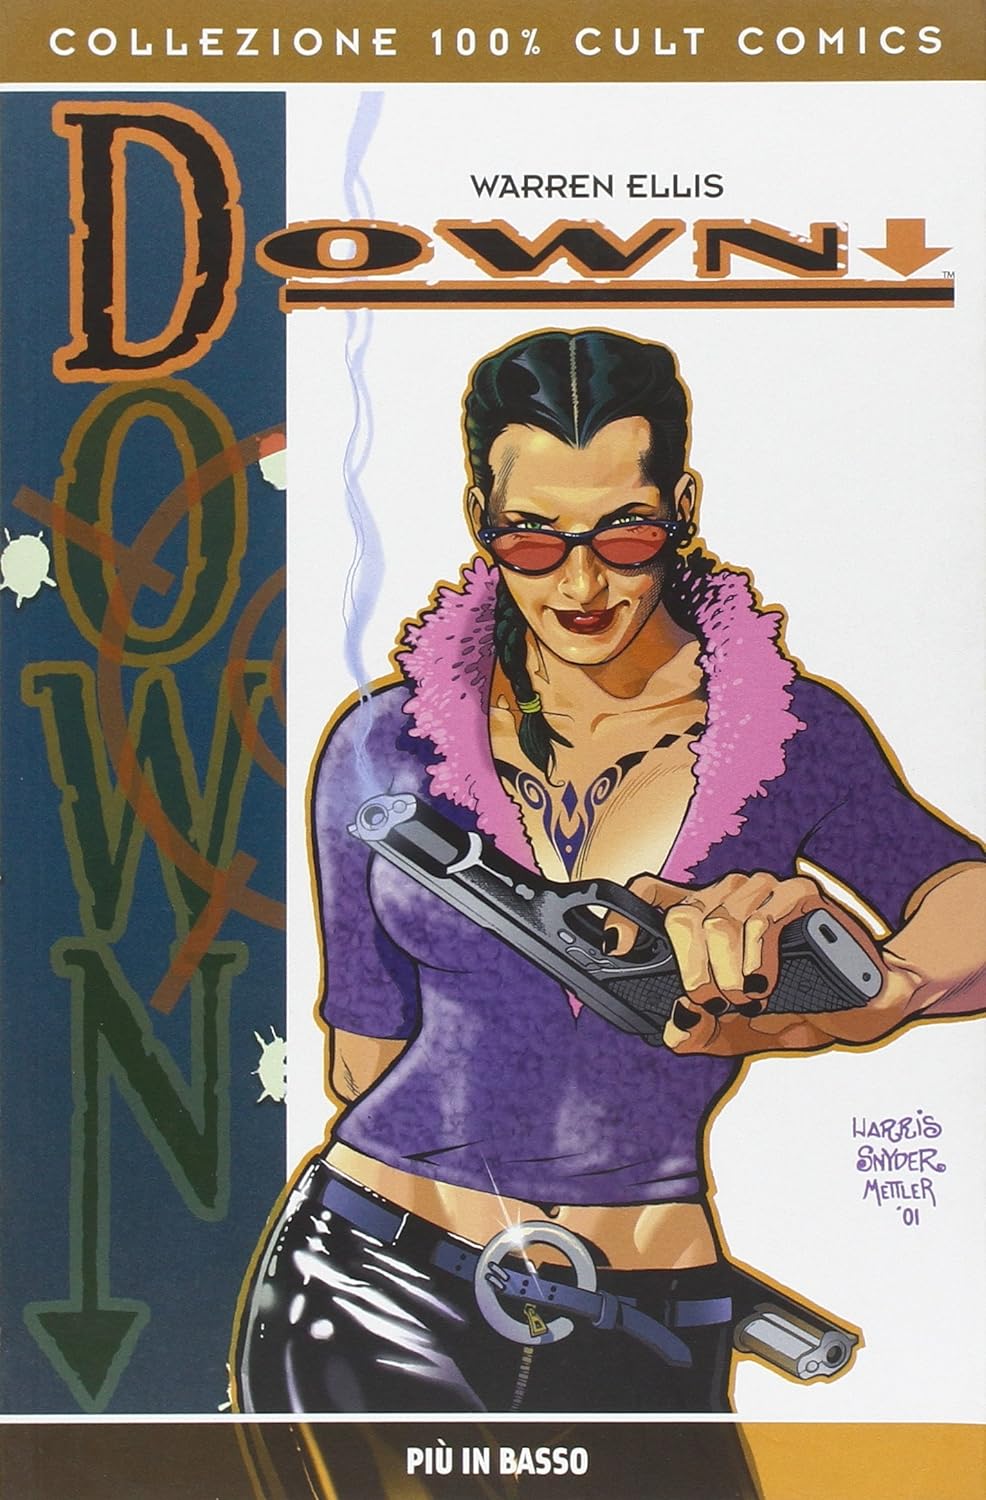 DOWN. PIU' IN BASSO - PANINI COMICS (2008)